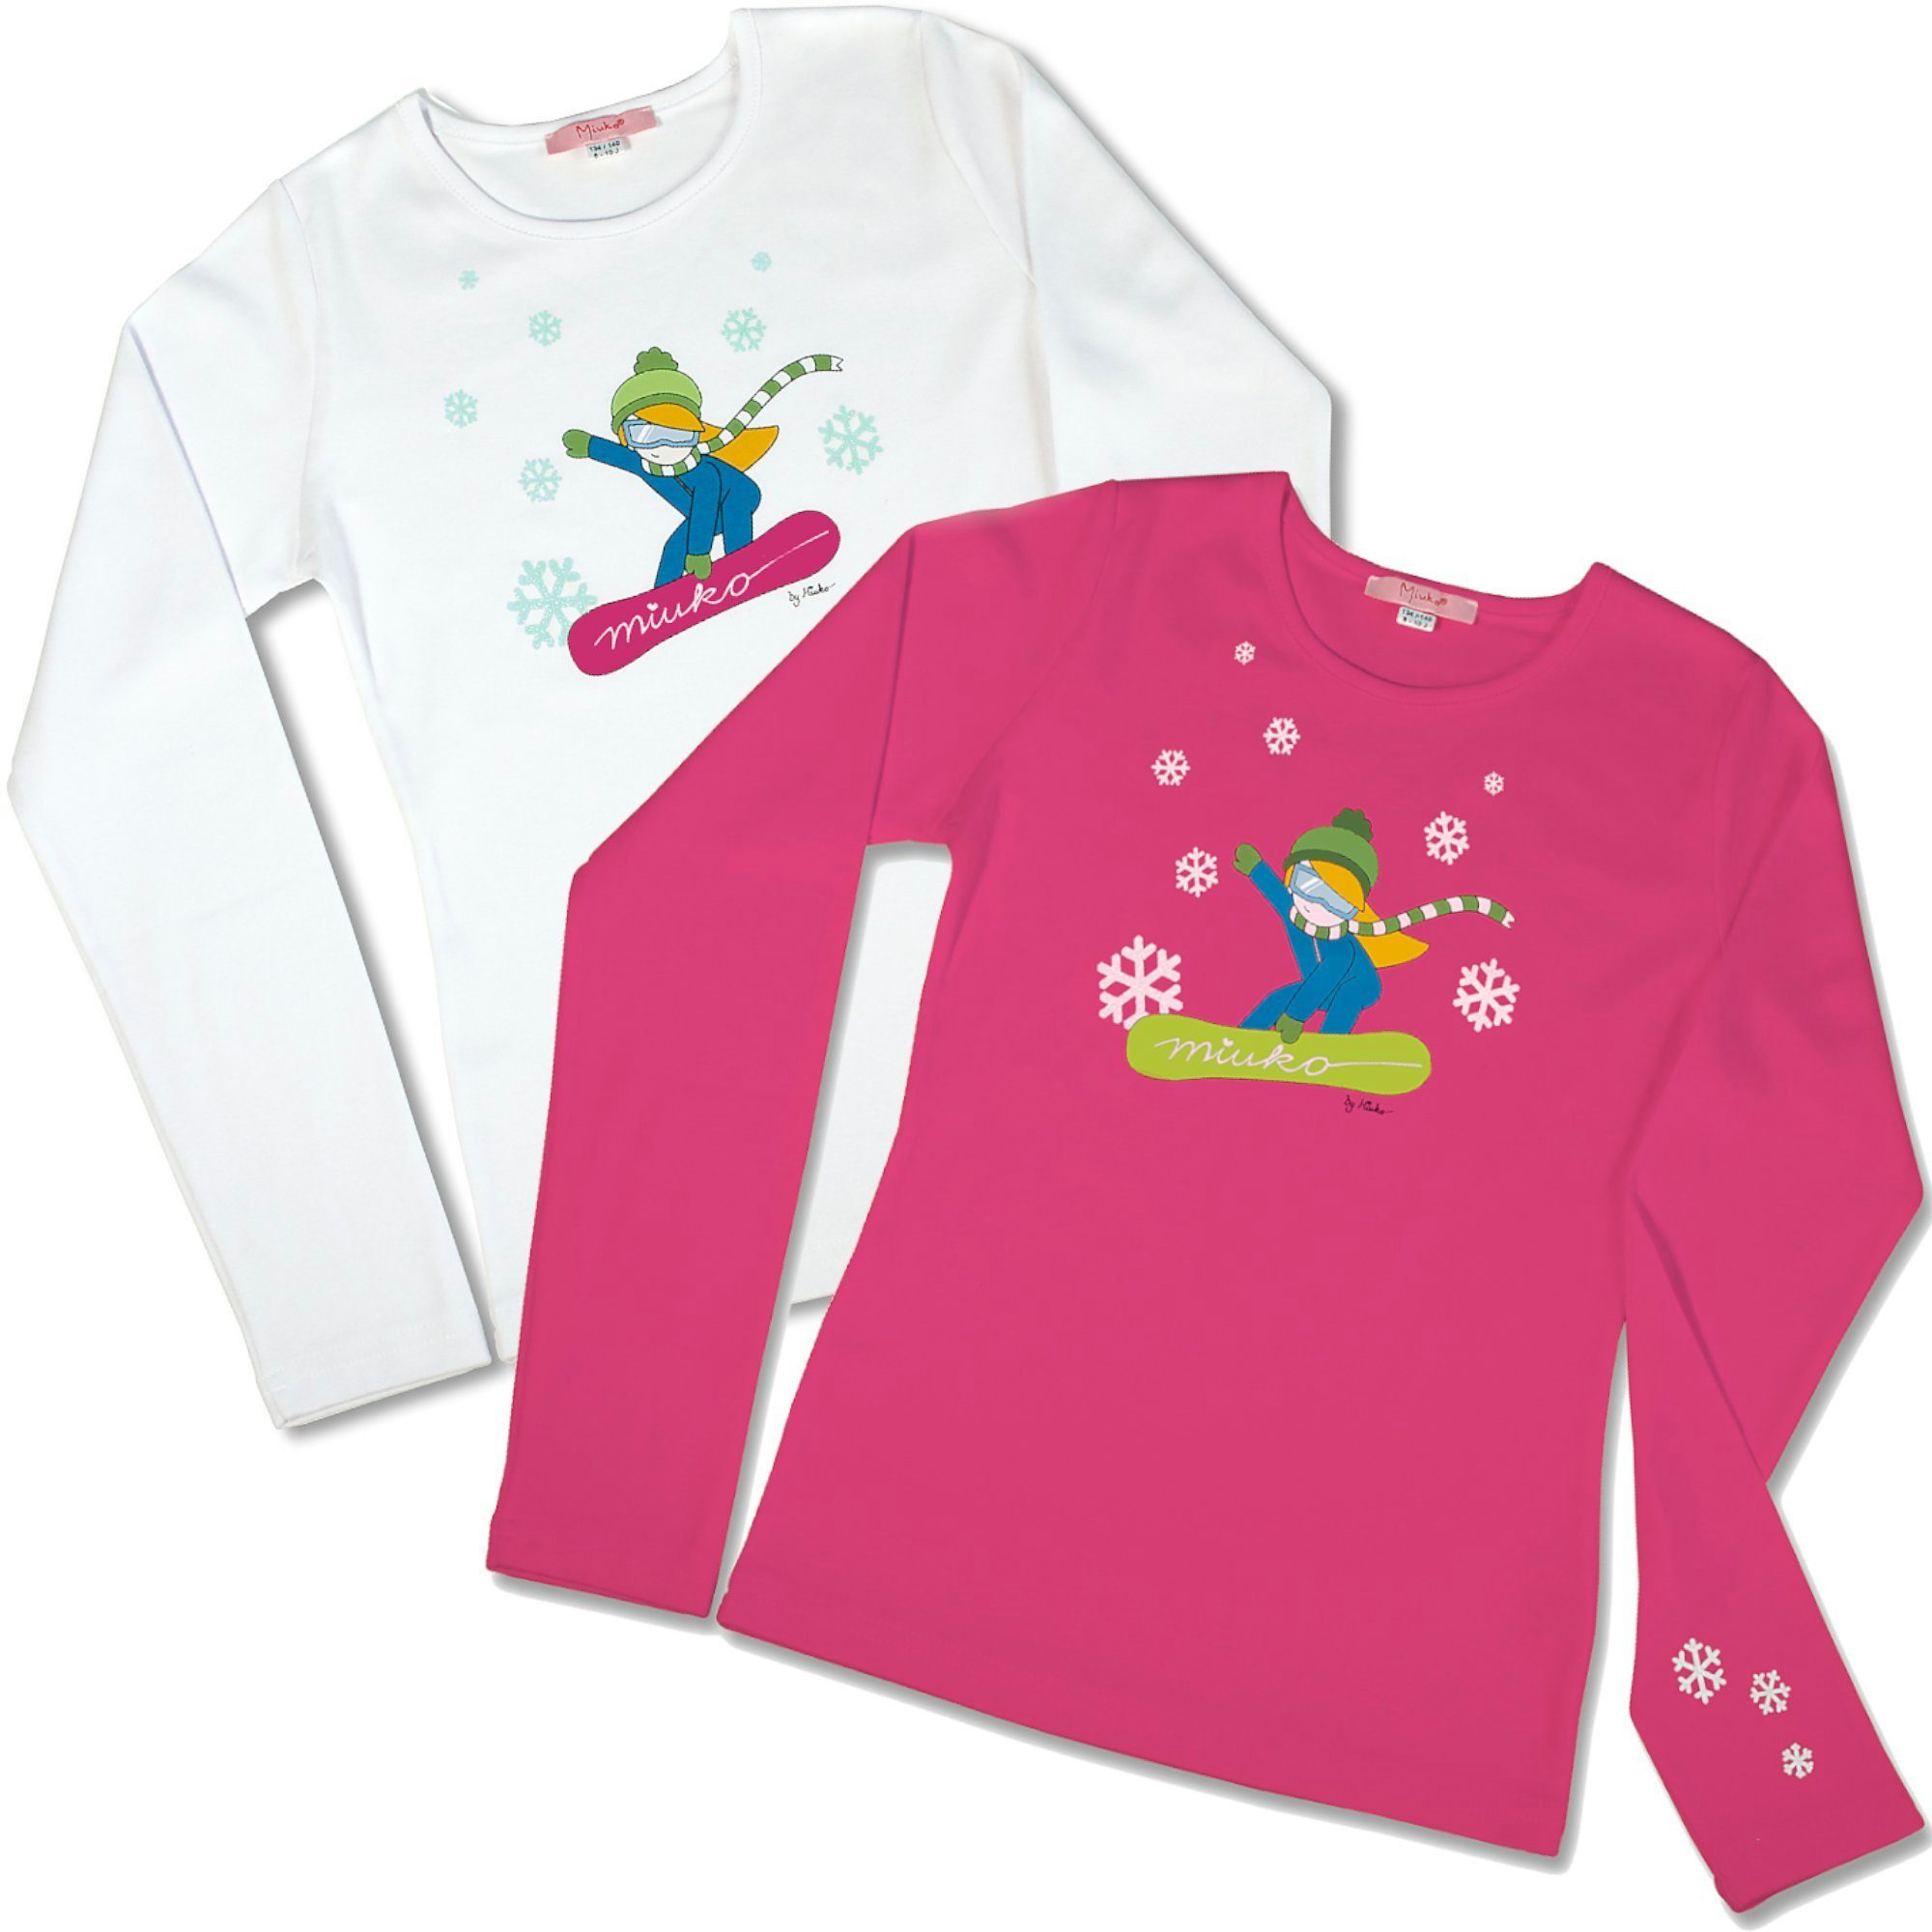 Miuko Langarmshirt für Mädchen weiß oder pink, T-Shirt langärmlig, Motiv Snowboarderin 100% Baumwolle 122 128 134 140 146 152 158 164